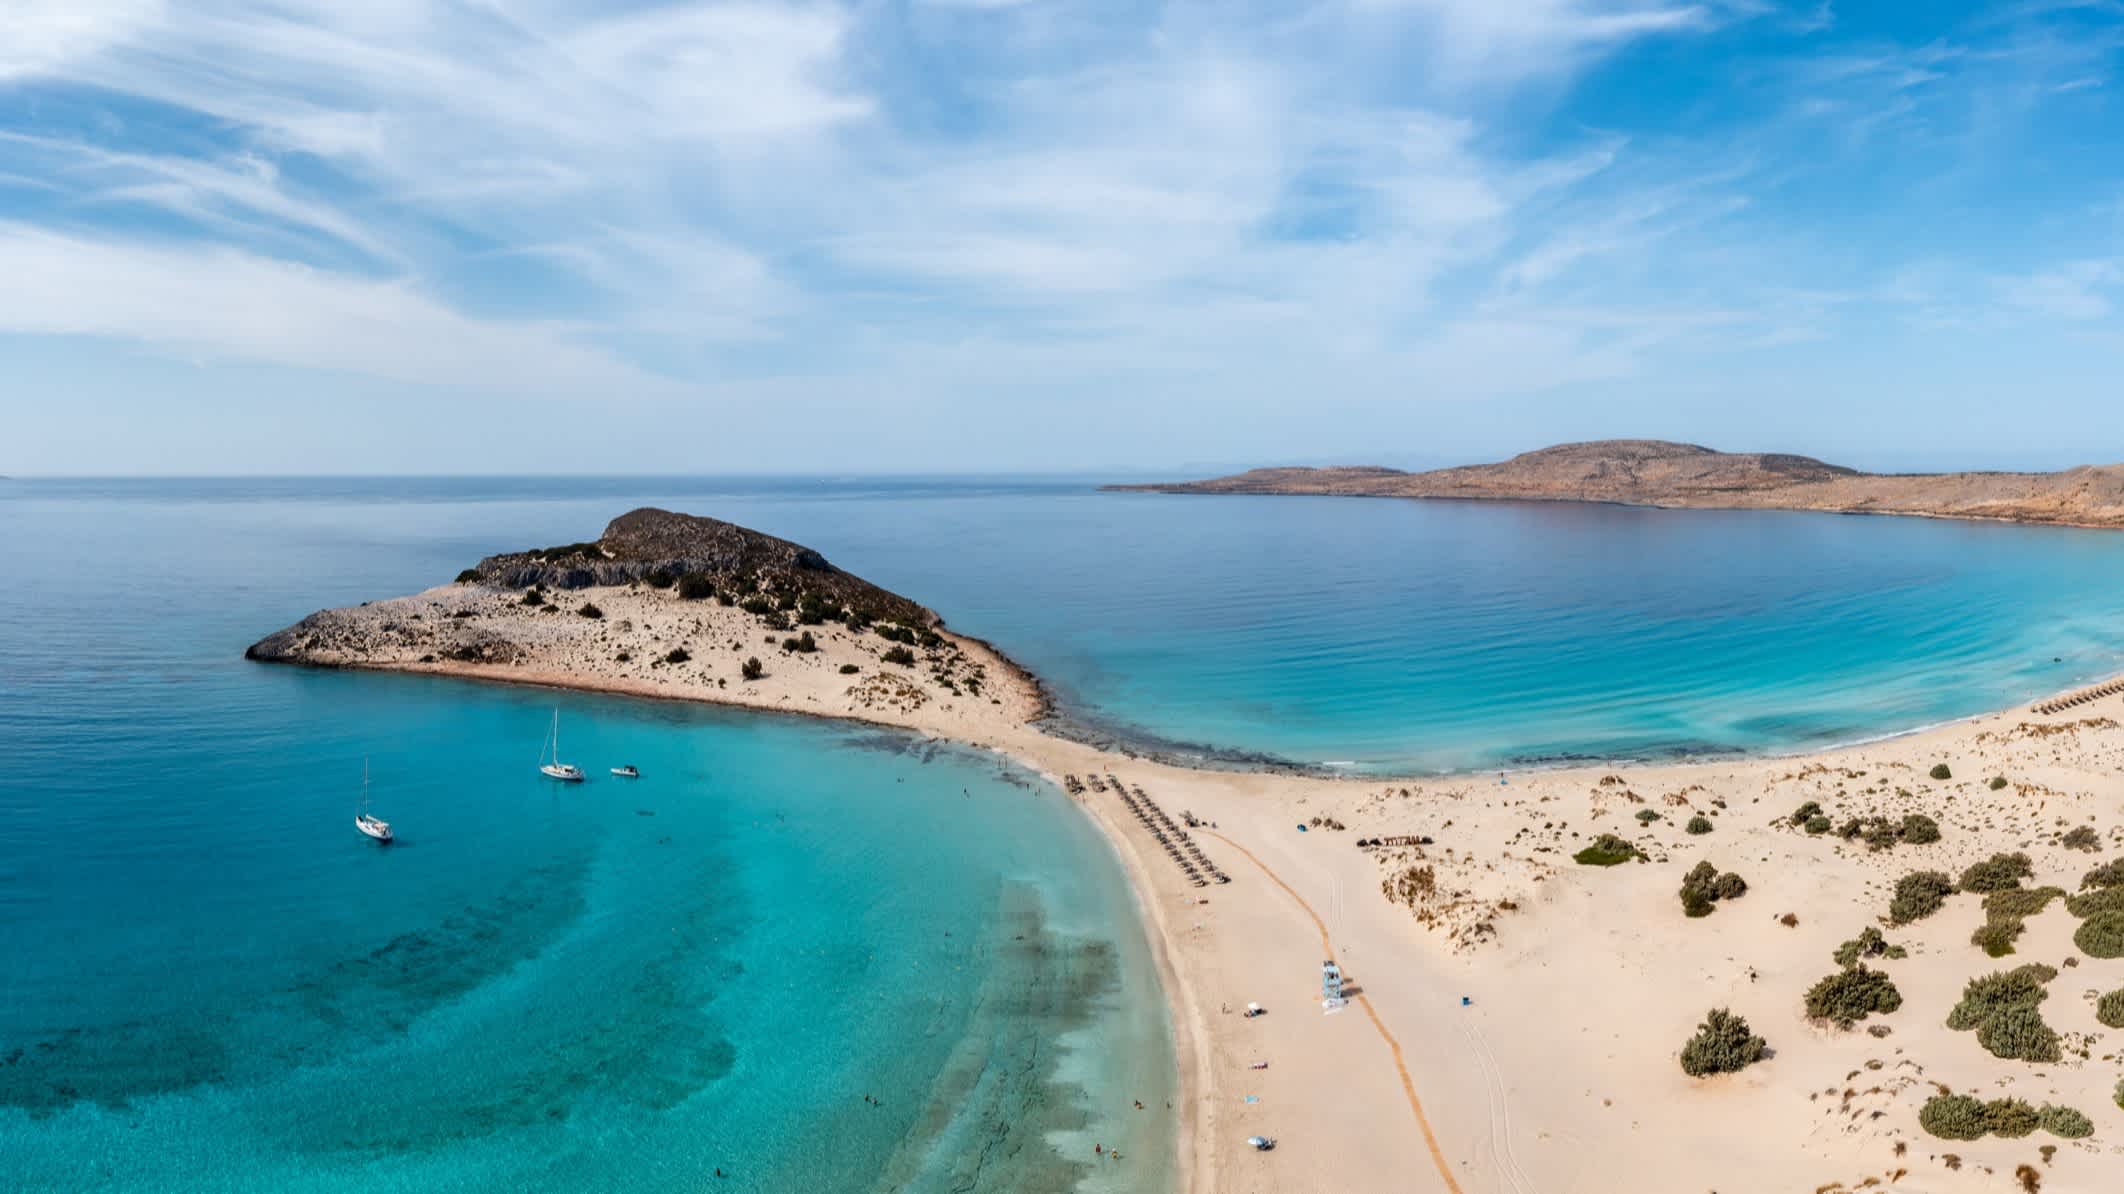 Berühmter Sandstrand Simos, Insel Elafonisos, Peloponnes, Griechenland mit Blick von oben auf die dünenähnliche Landschaft und das Meer.